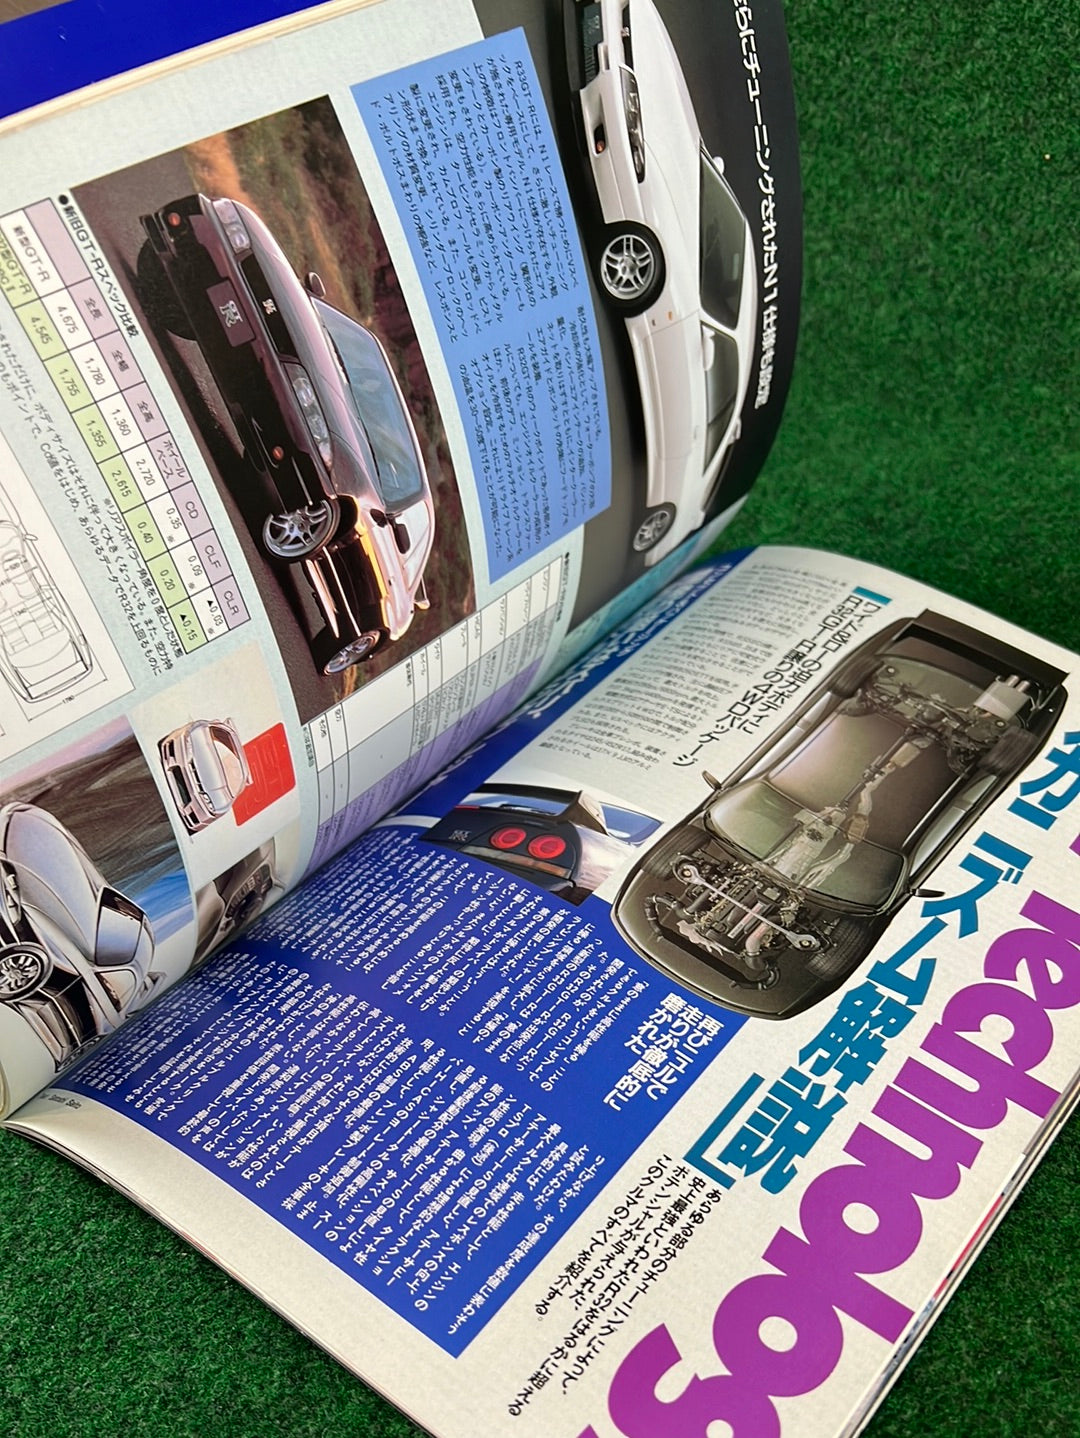 Hyper Rev - Nissan Skyline R33 GTR Super Guide Magazine